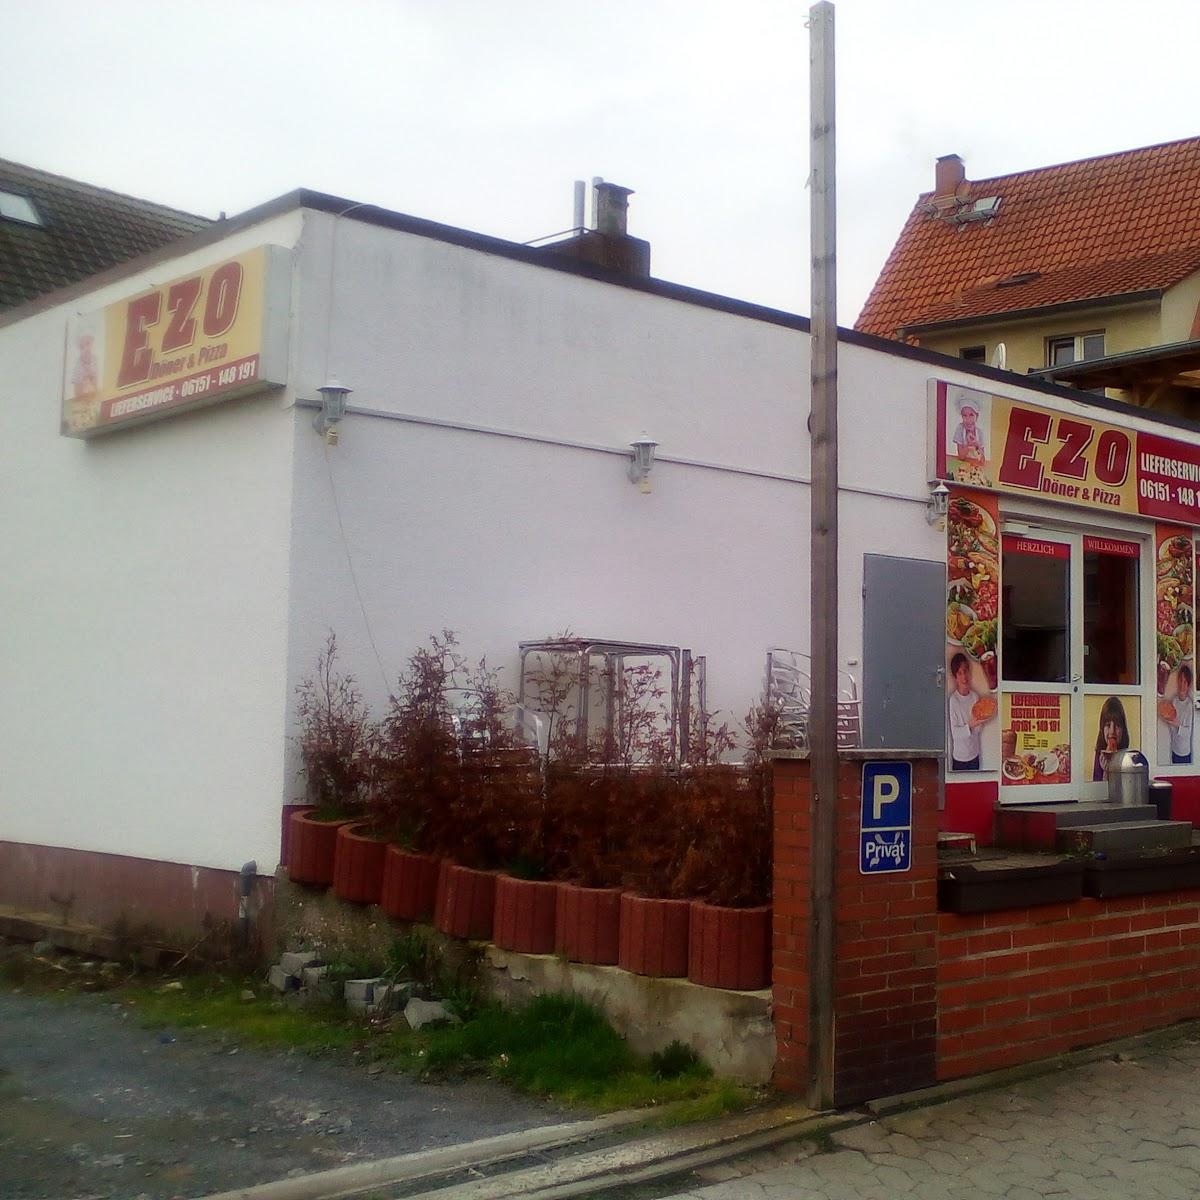 Restaurant "EZO Döner & Pizza" in  Mühltal